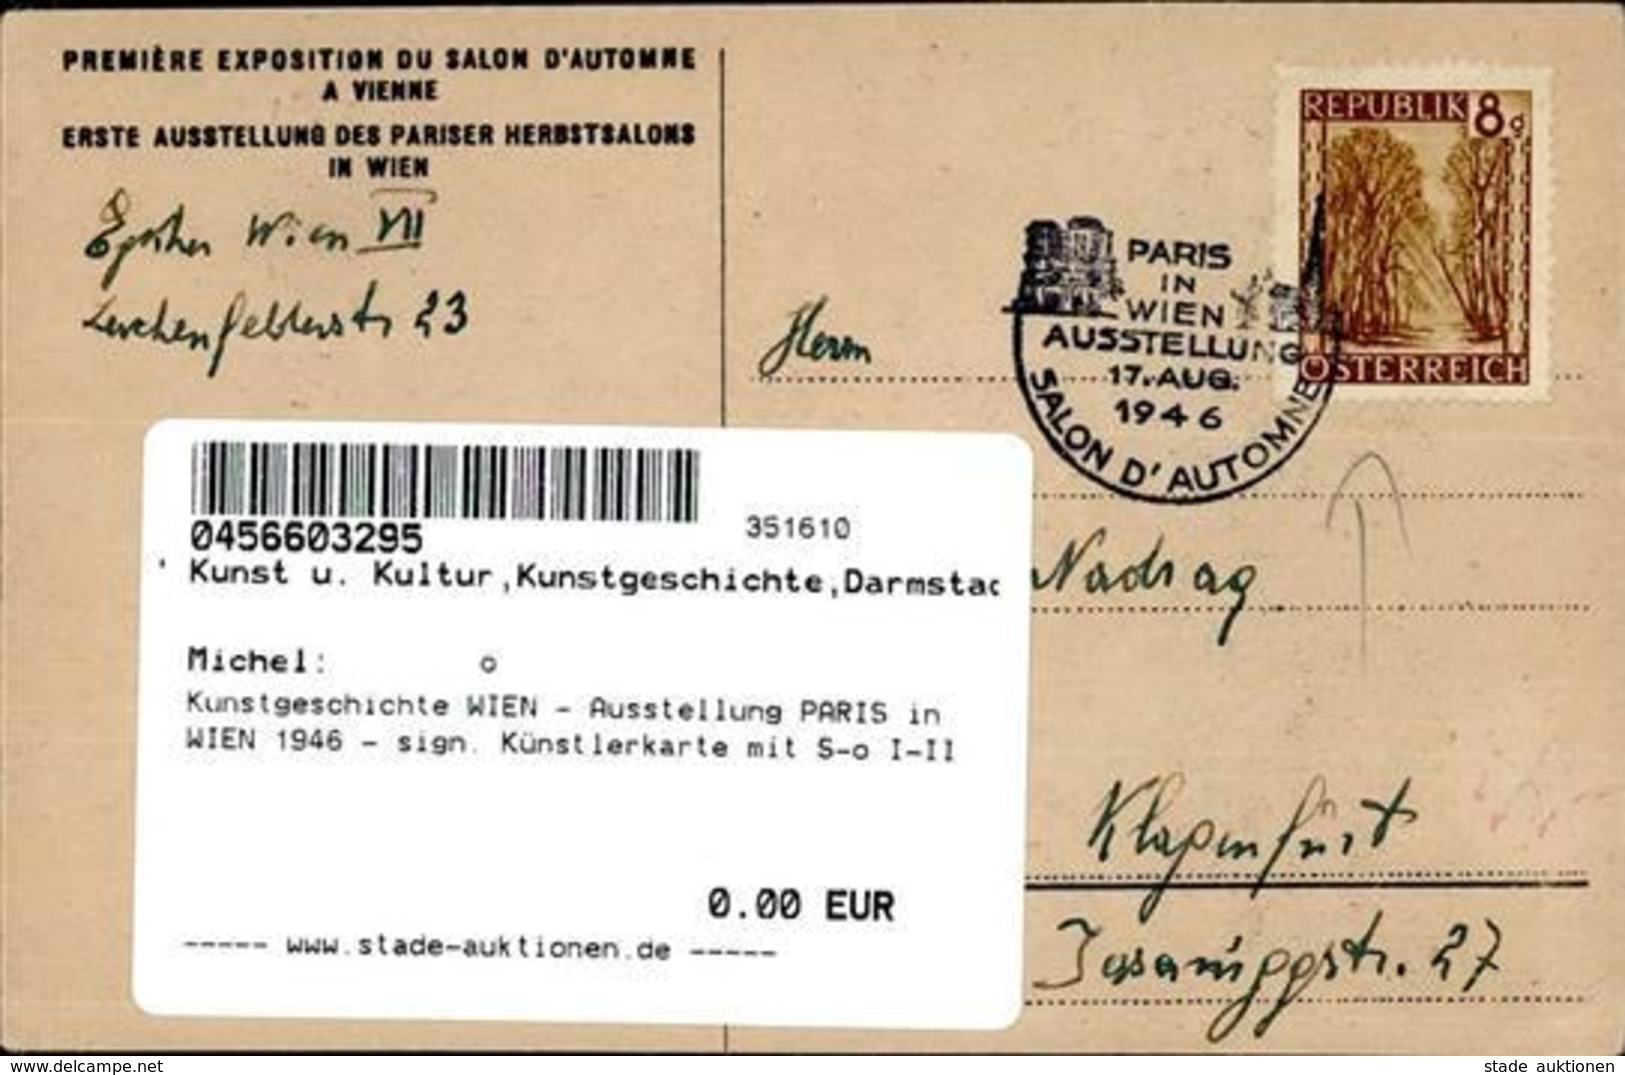 Kunstgeschichte WIEN - Ausstellung PARIS In WIEN 1946 - Sign. Künstlerkarte Mit S-o I-II Expo - Christiansen